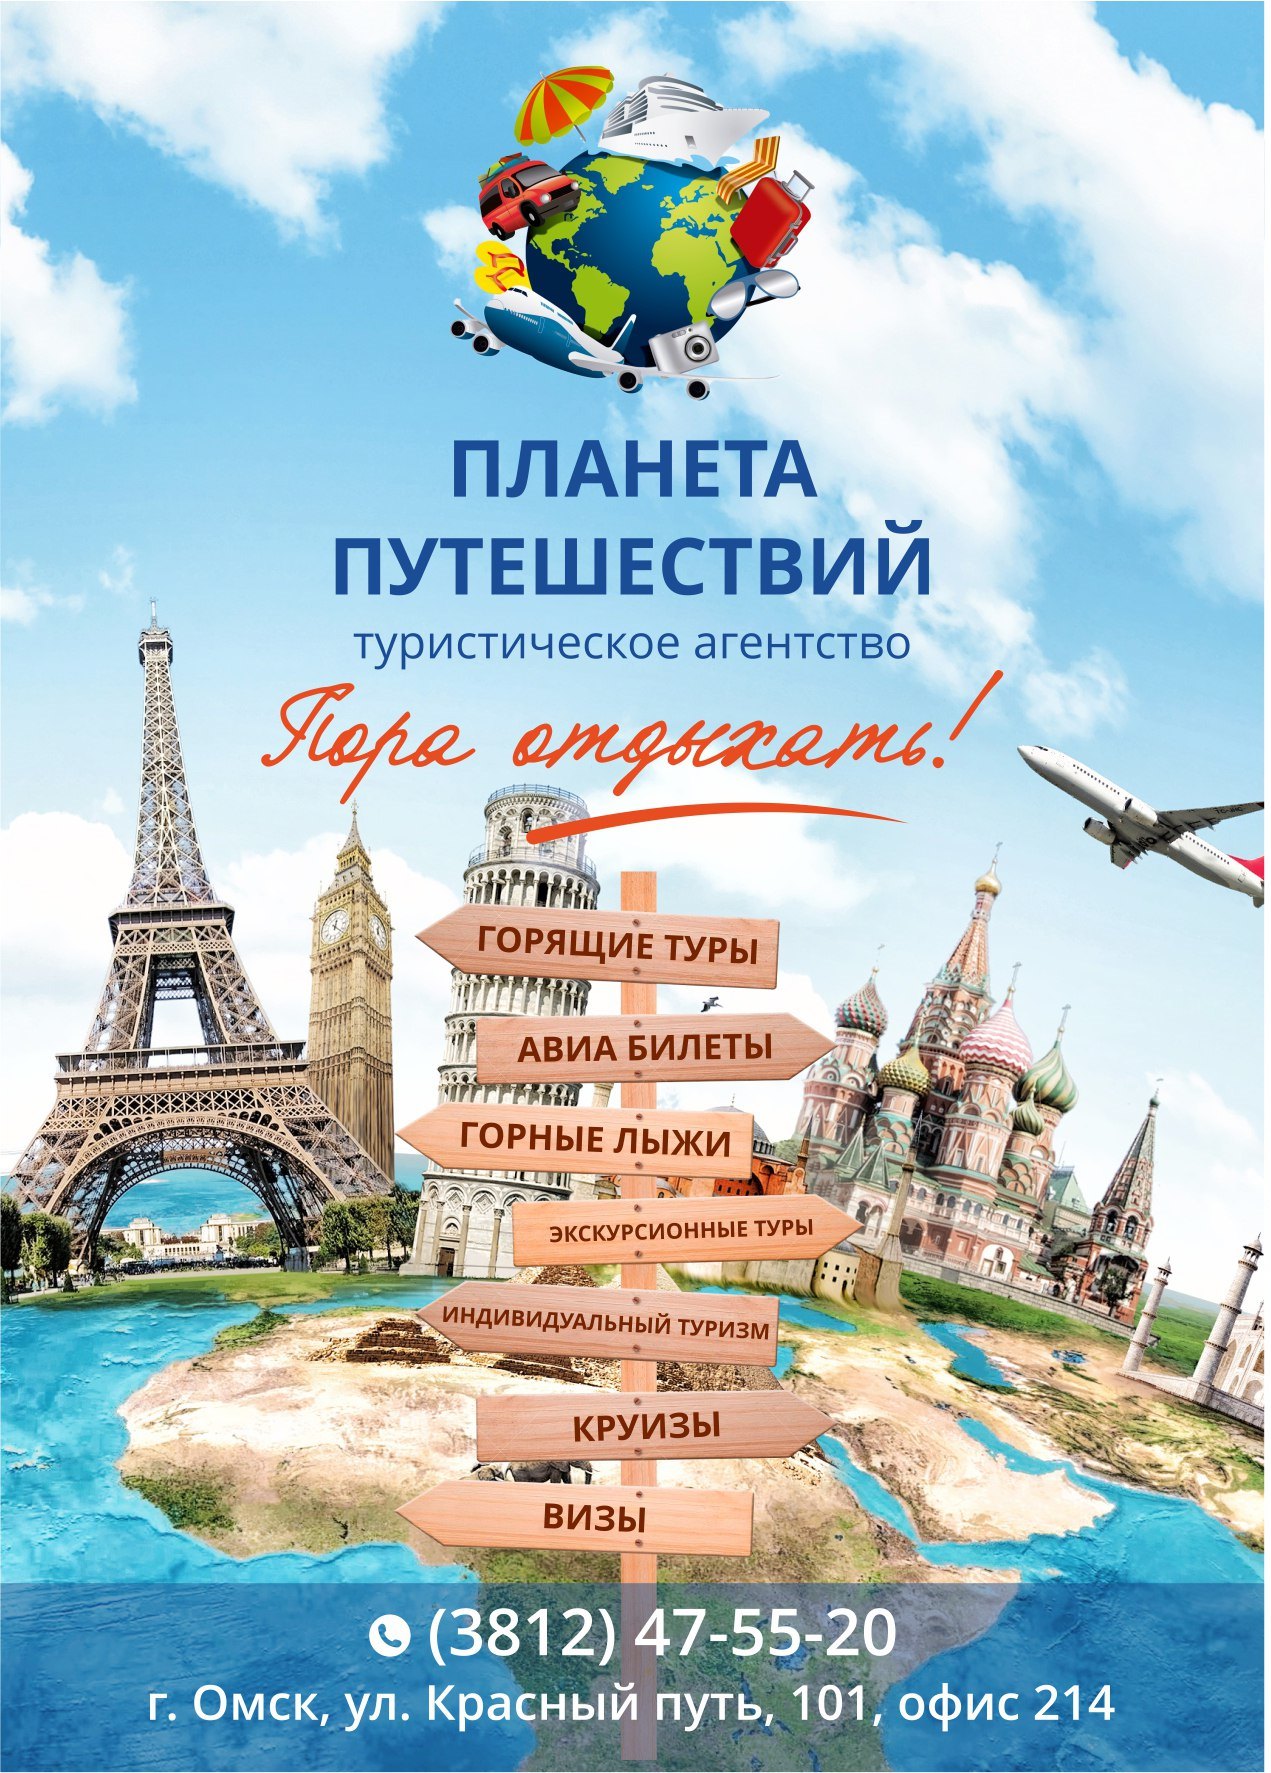 Про путешествия по россии. Реклама турагентства. Плакат туристического агентства. Рекламный плакат туризм. Реклама путешествий.